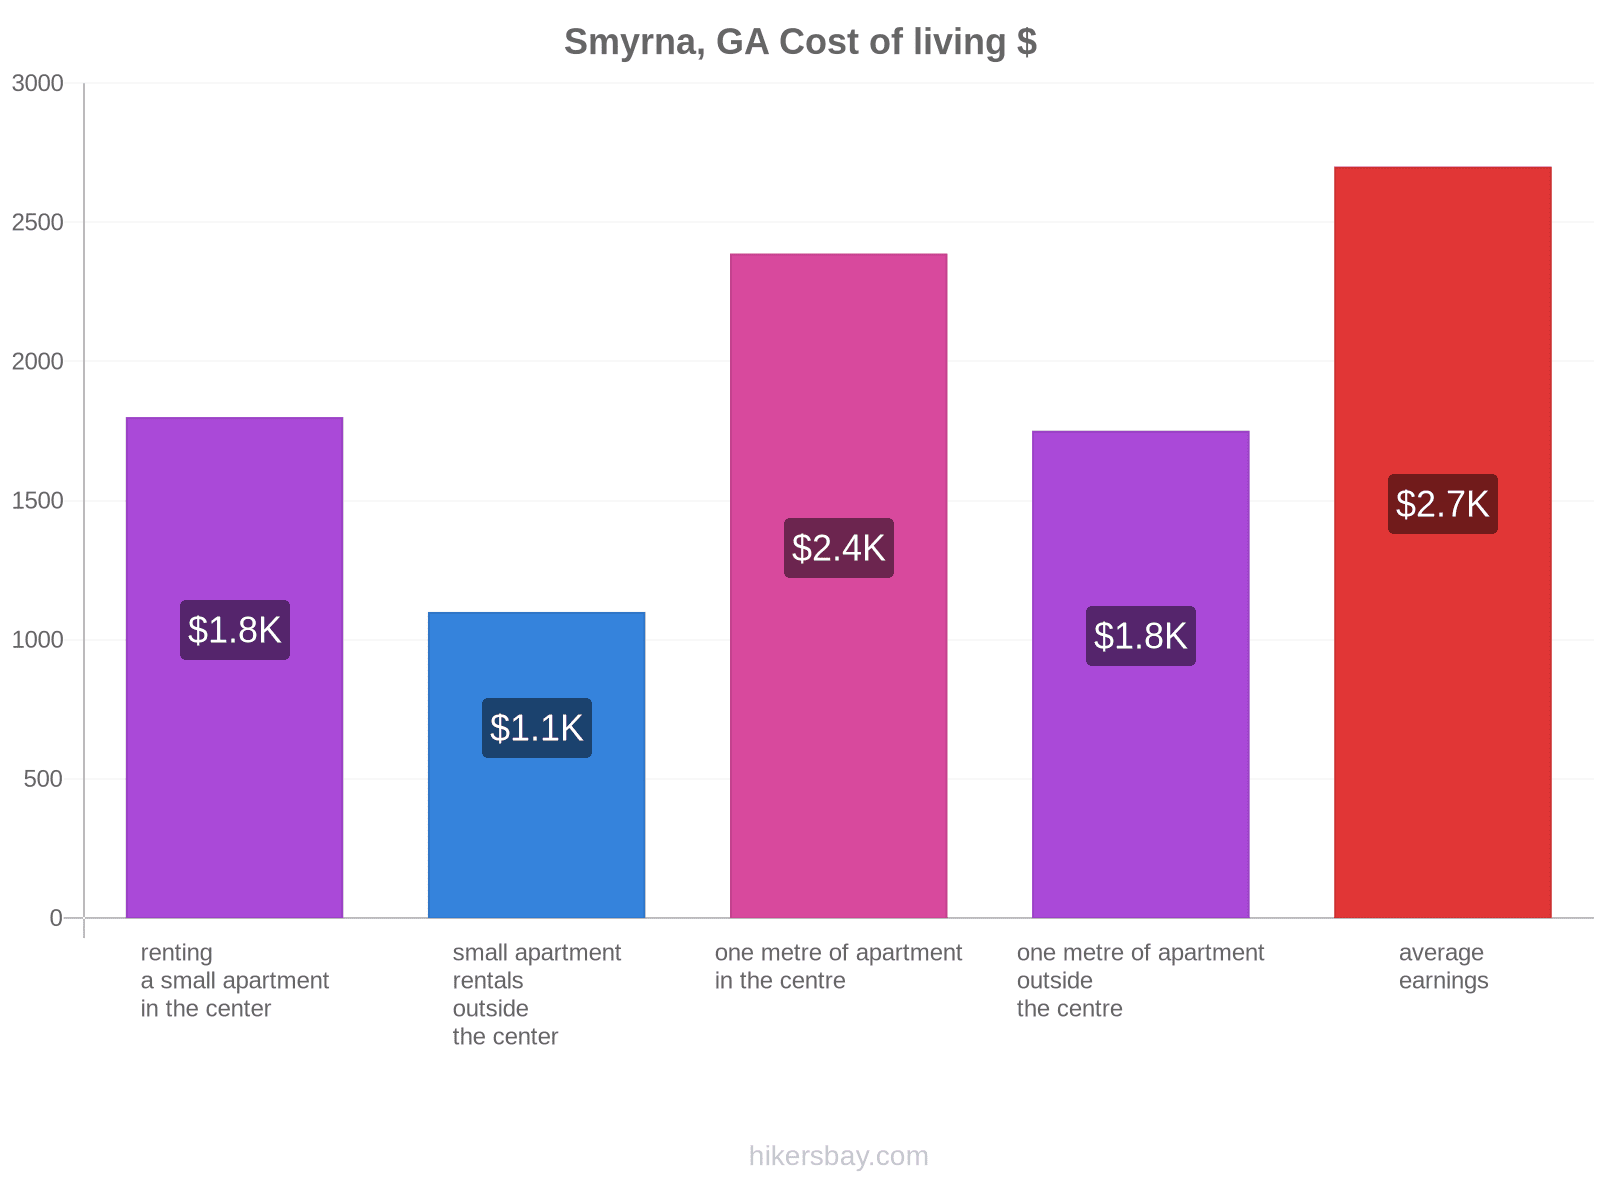 Smyrna, GA cost of living hikersbay.com